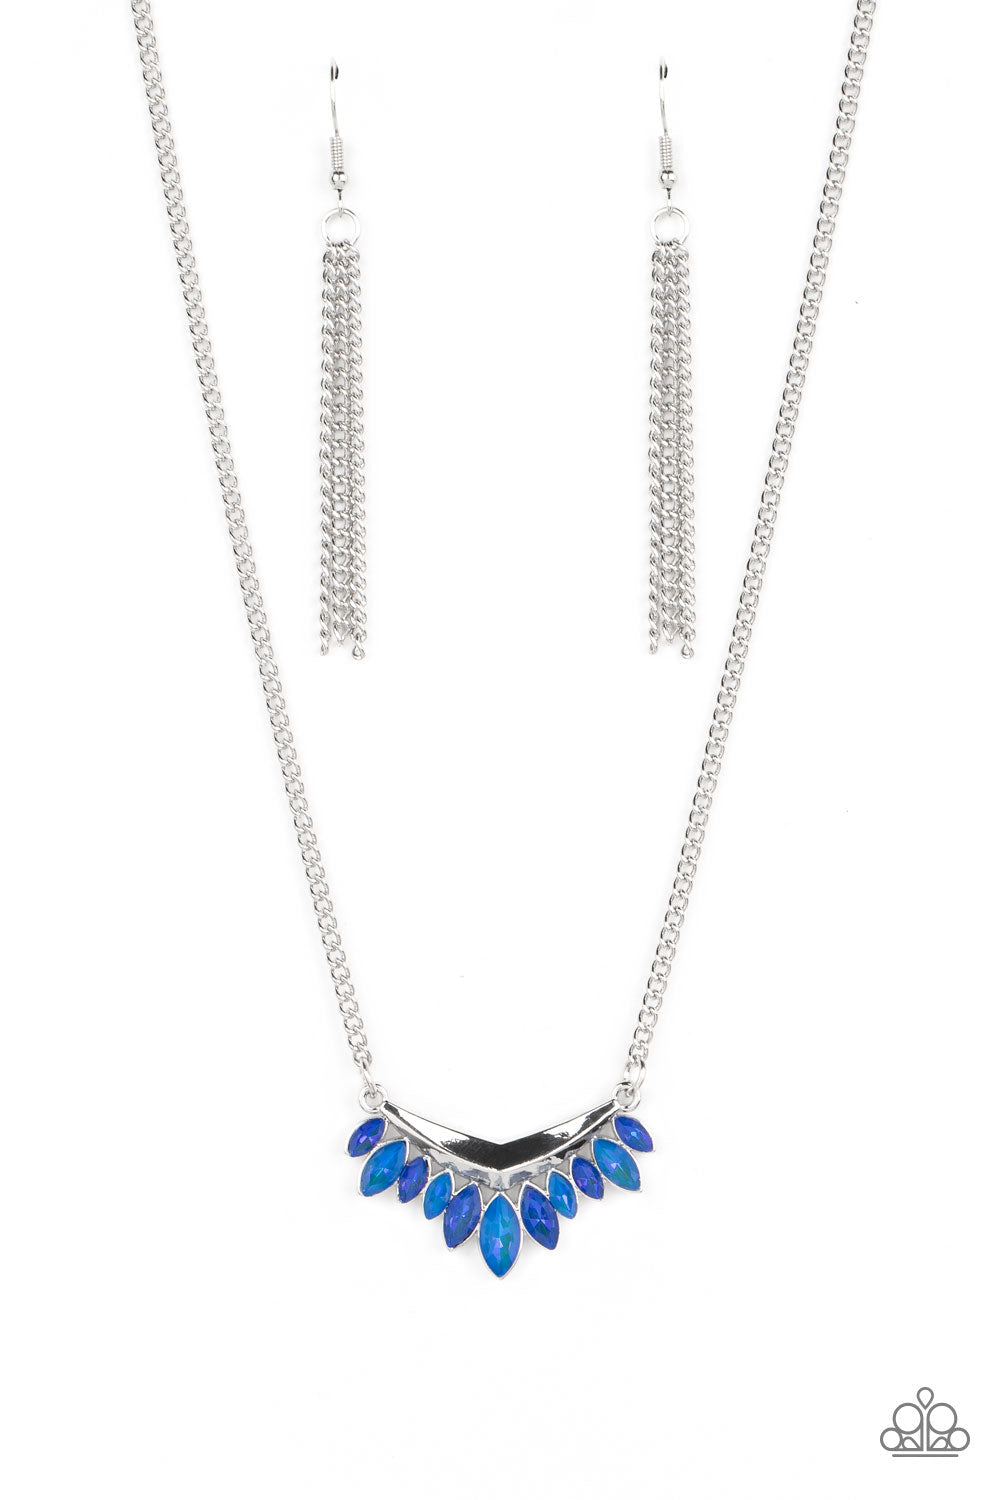 Flash of Fringe - Blue Marquise-Cut Gem Fringe Paparazzi Necklace & matching earrings